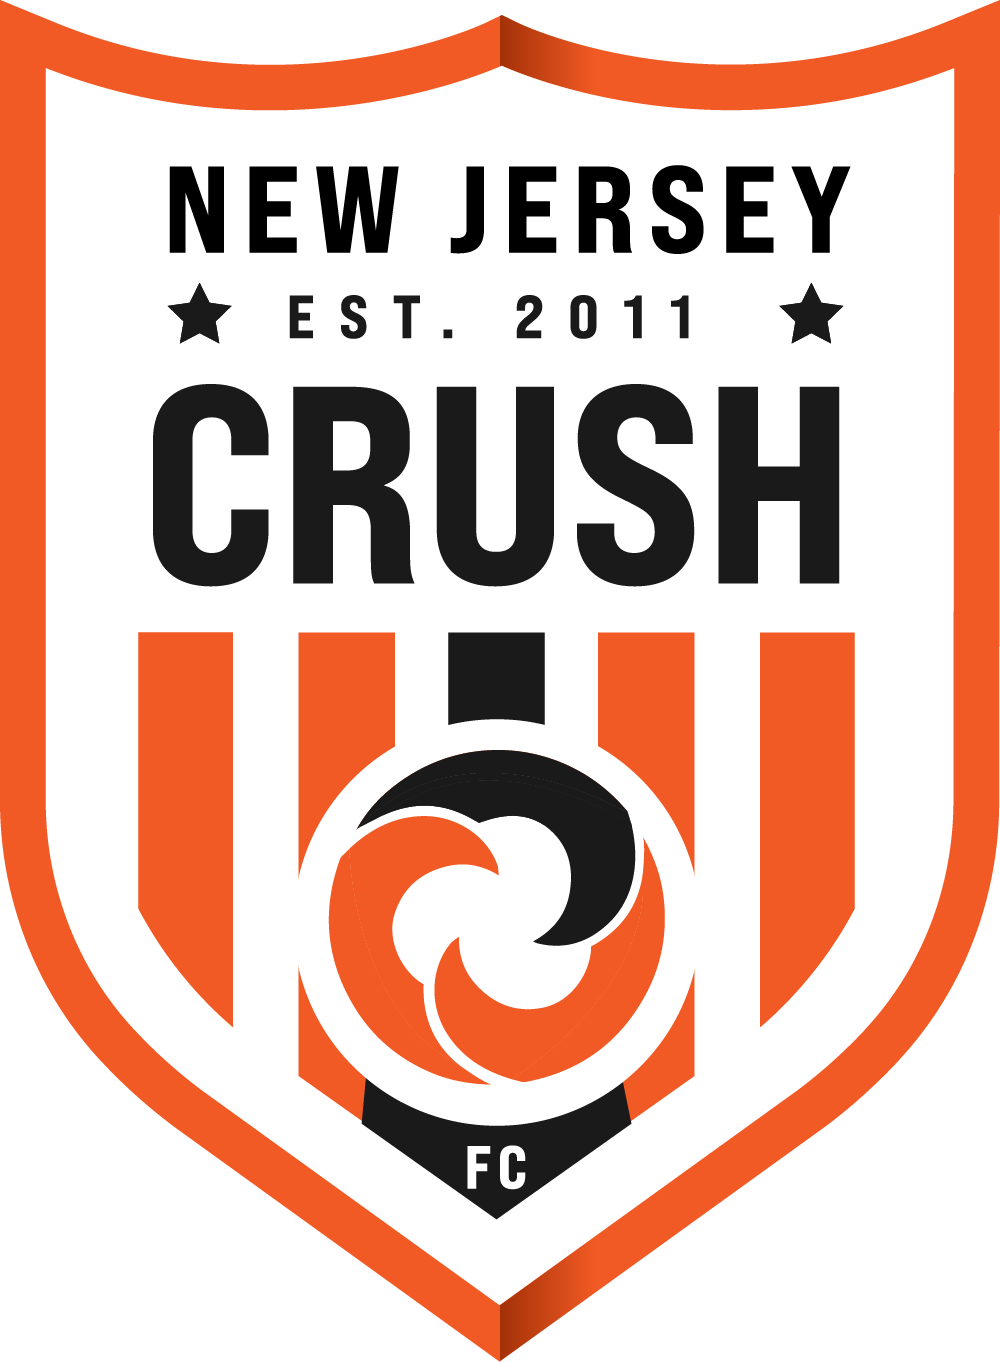 NJ CRUSH FC _ WHITE1000w